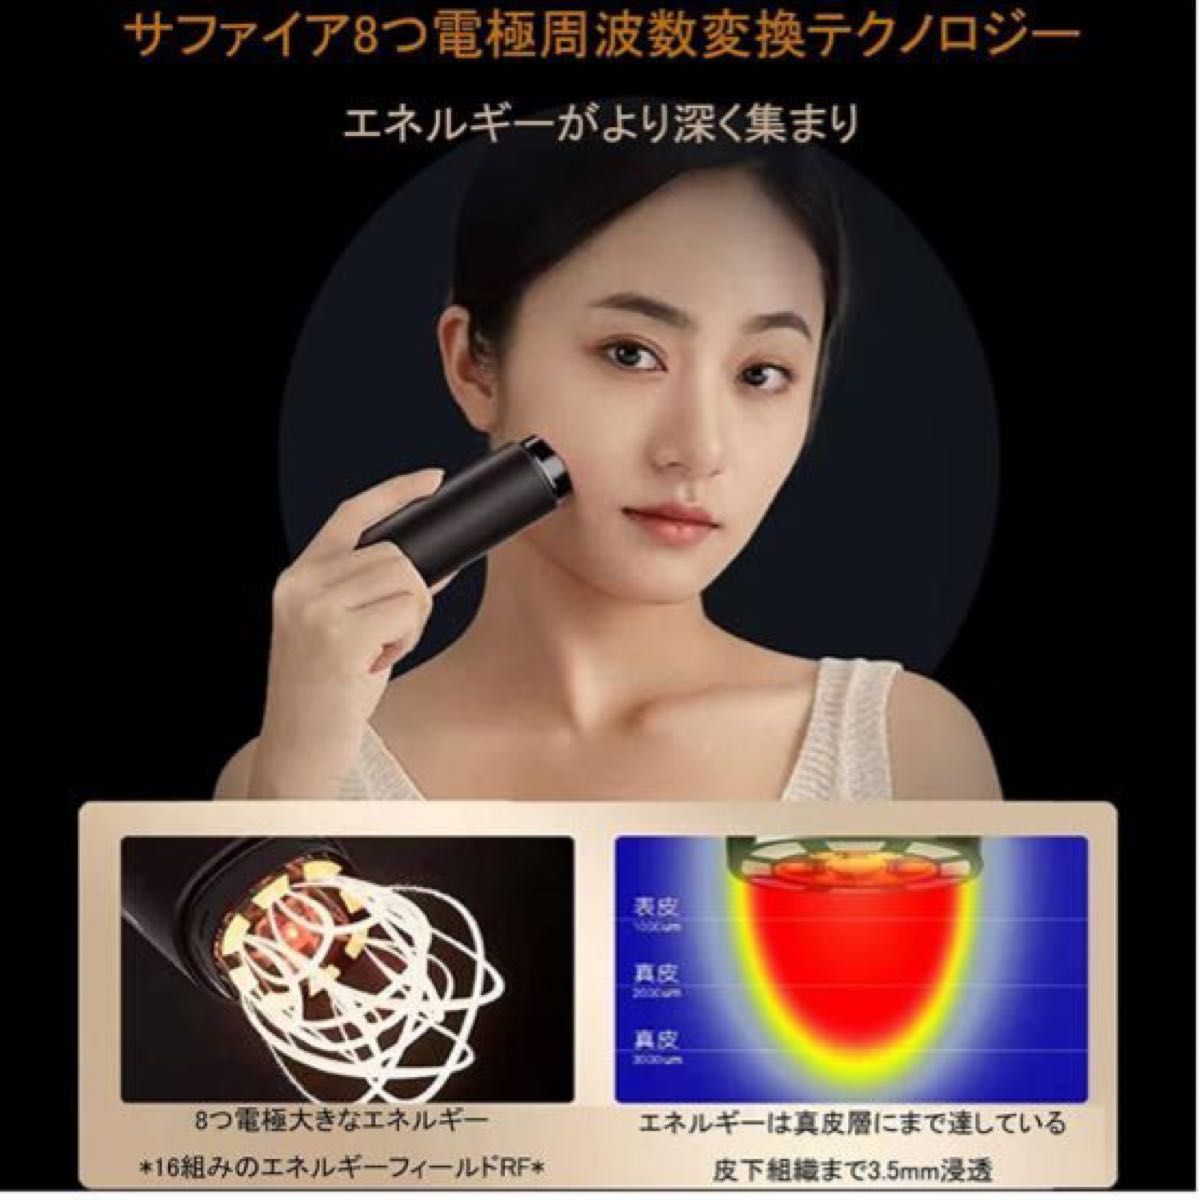 新発売の 最新エステ技術美顔器 美顔器【最新エステ技術】RF美顔器 1台